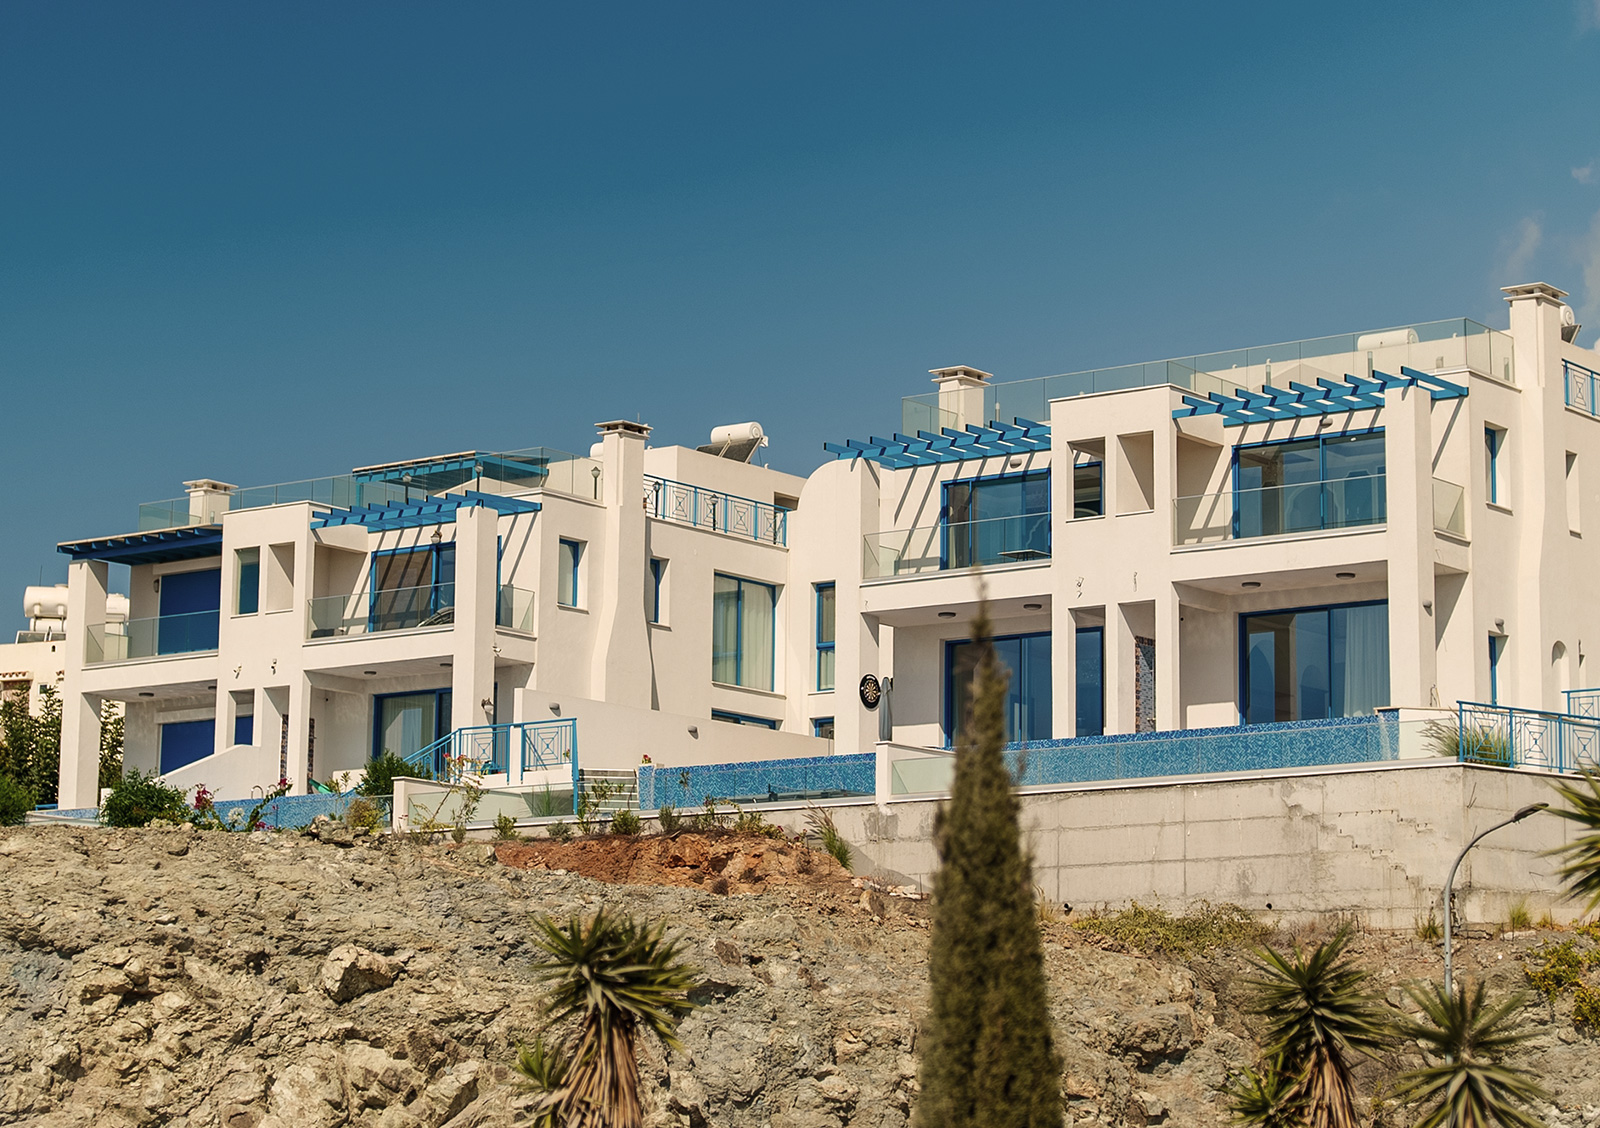  Продаж нерухомості на Кіпрі до 39%</trp-post-container